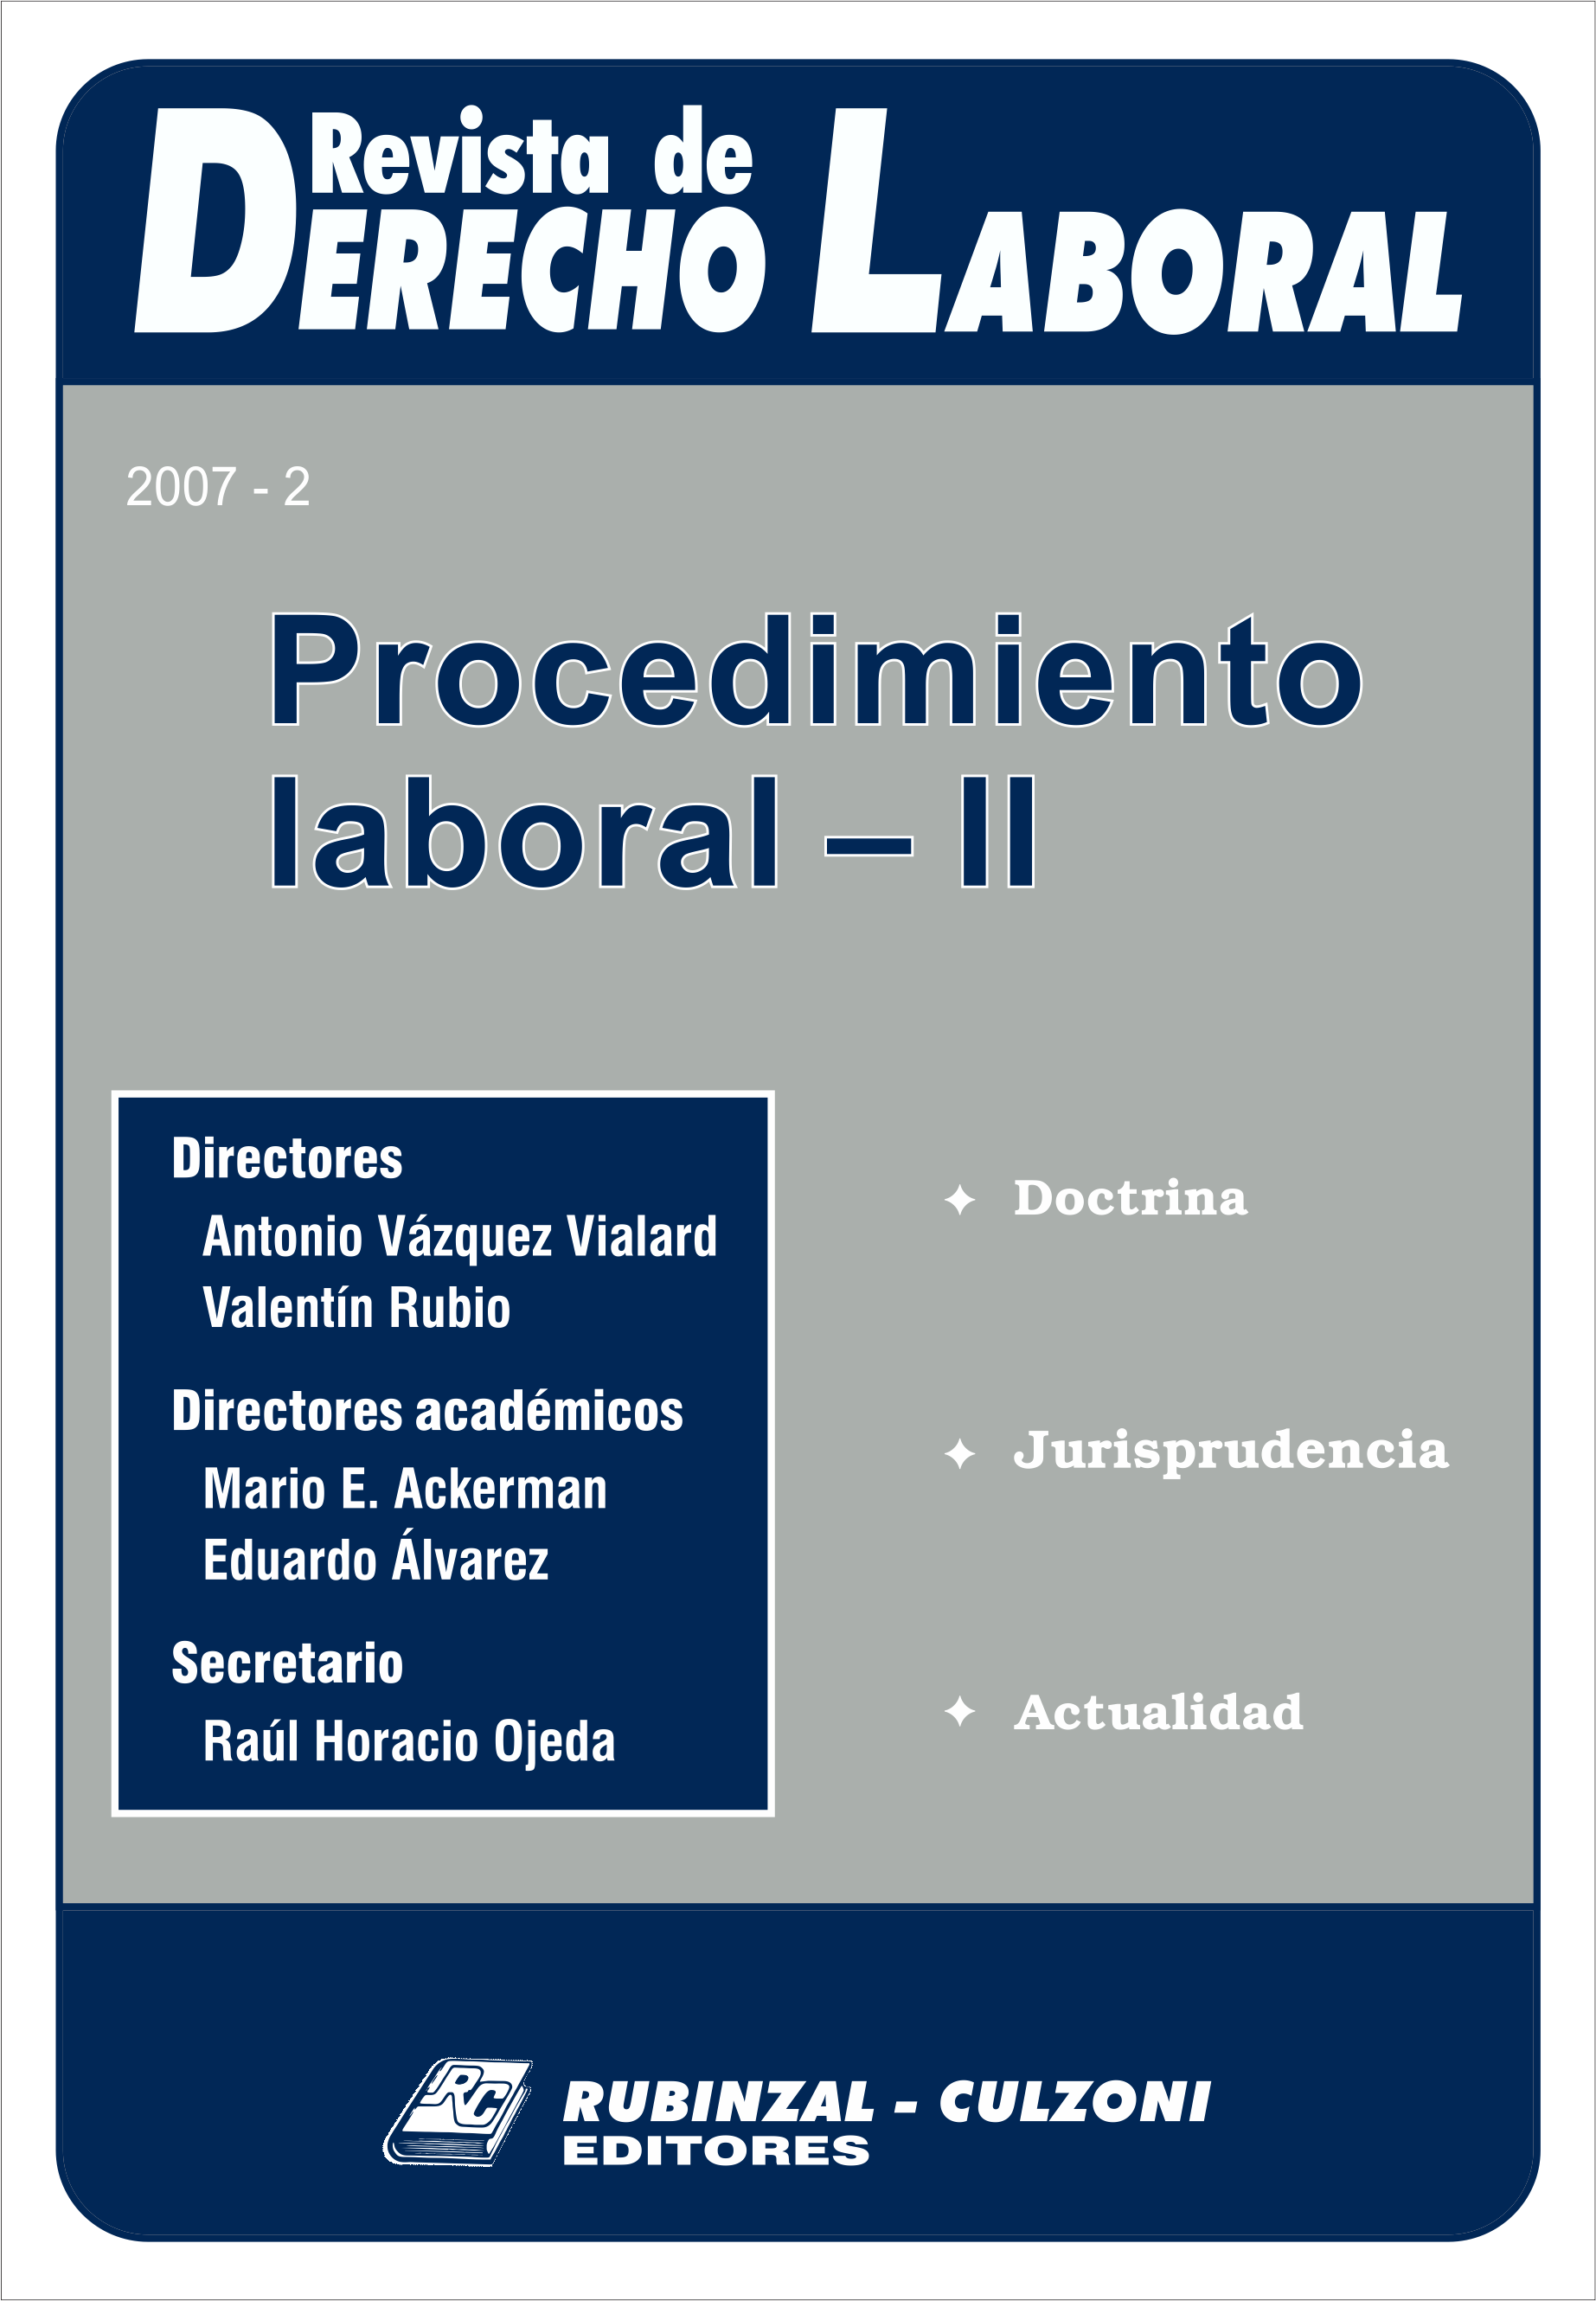 Revista de Derecho Laboral - Procedimiento Laboral - II.